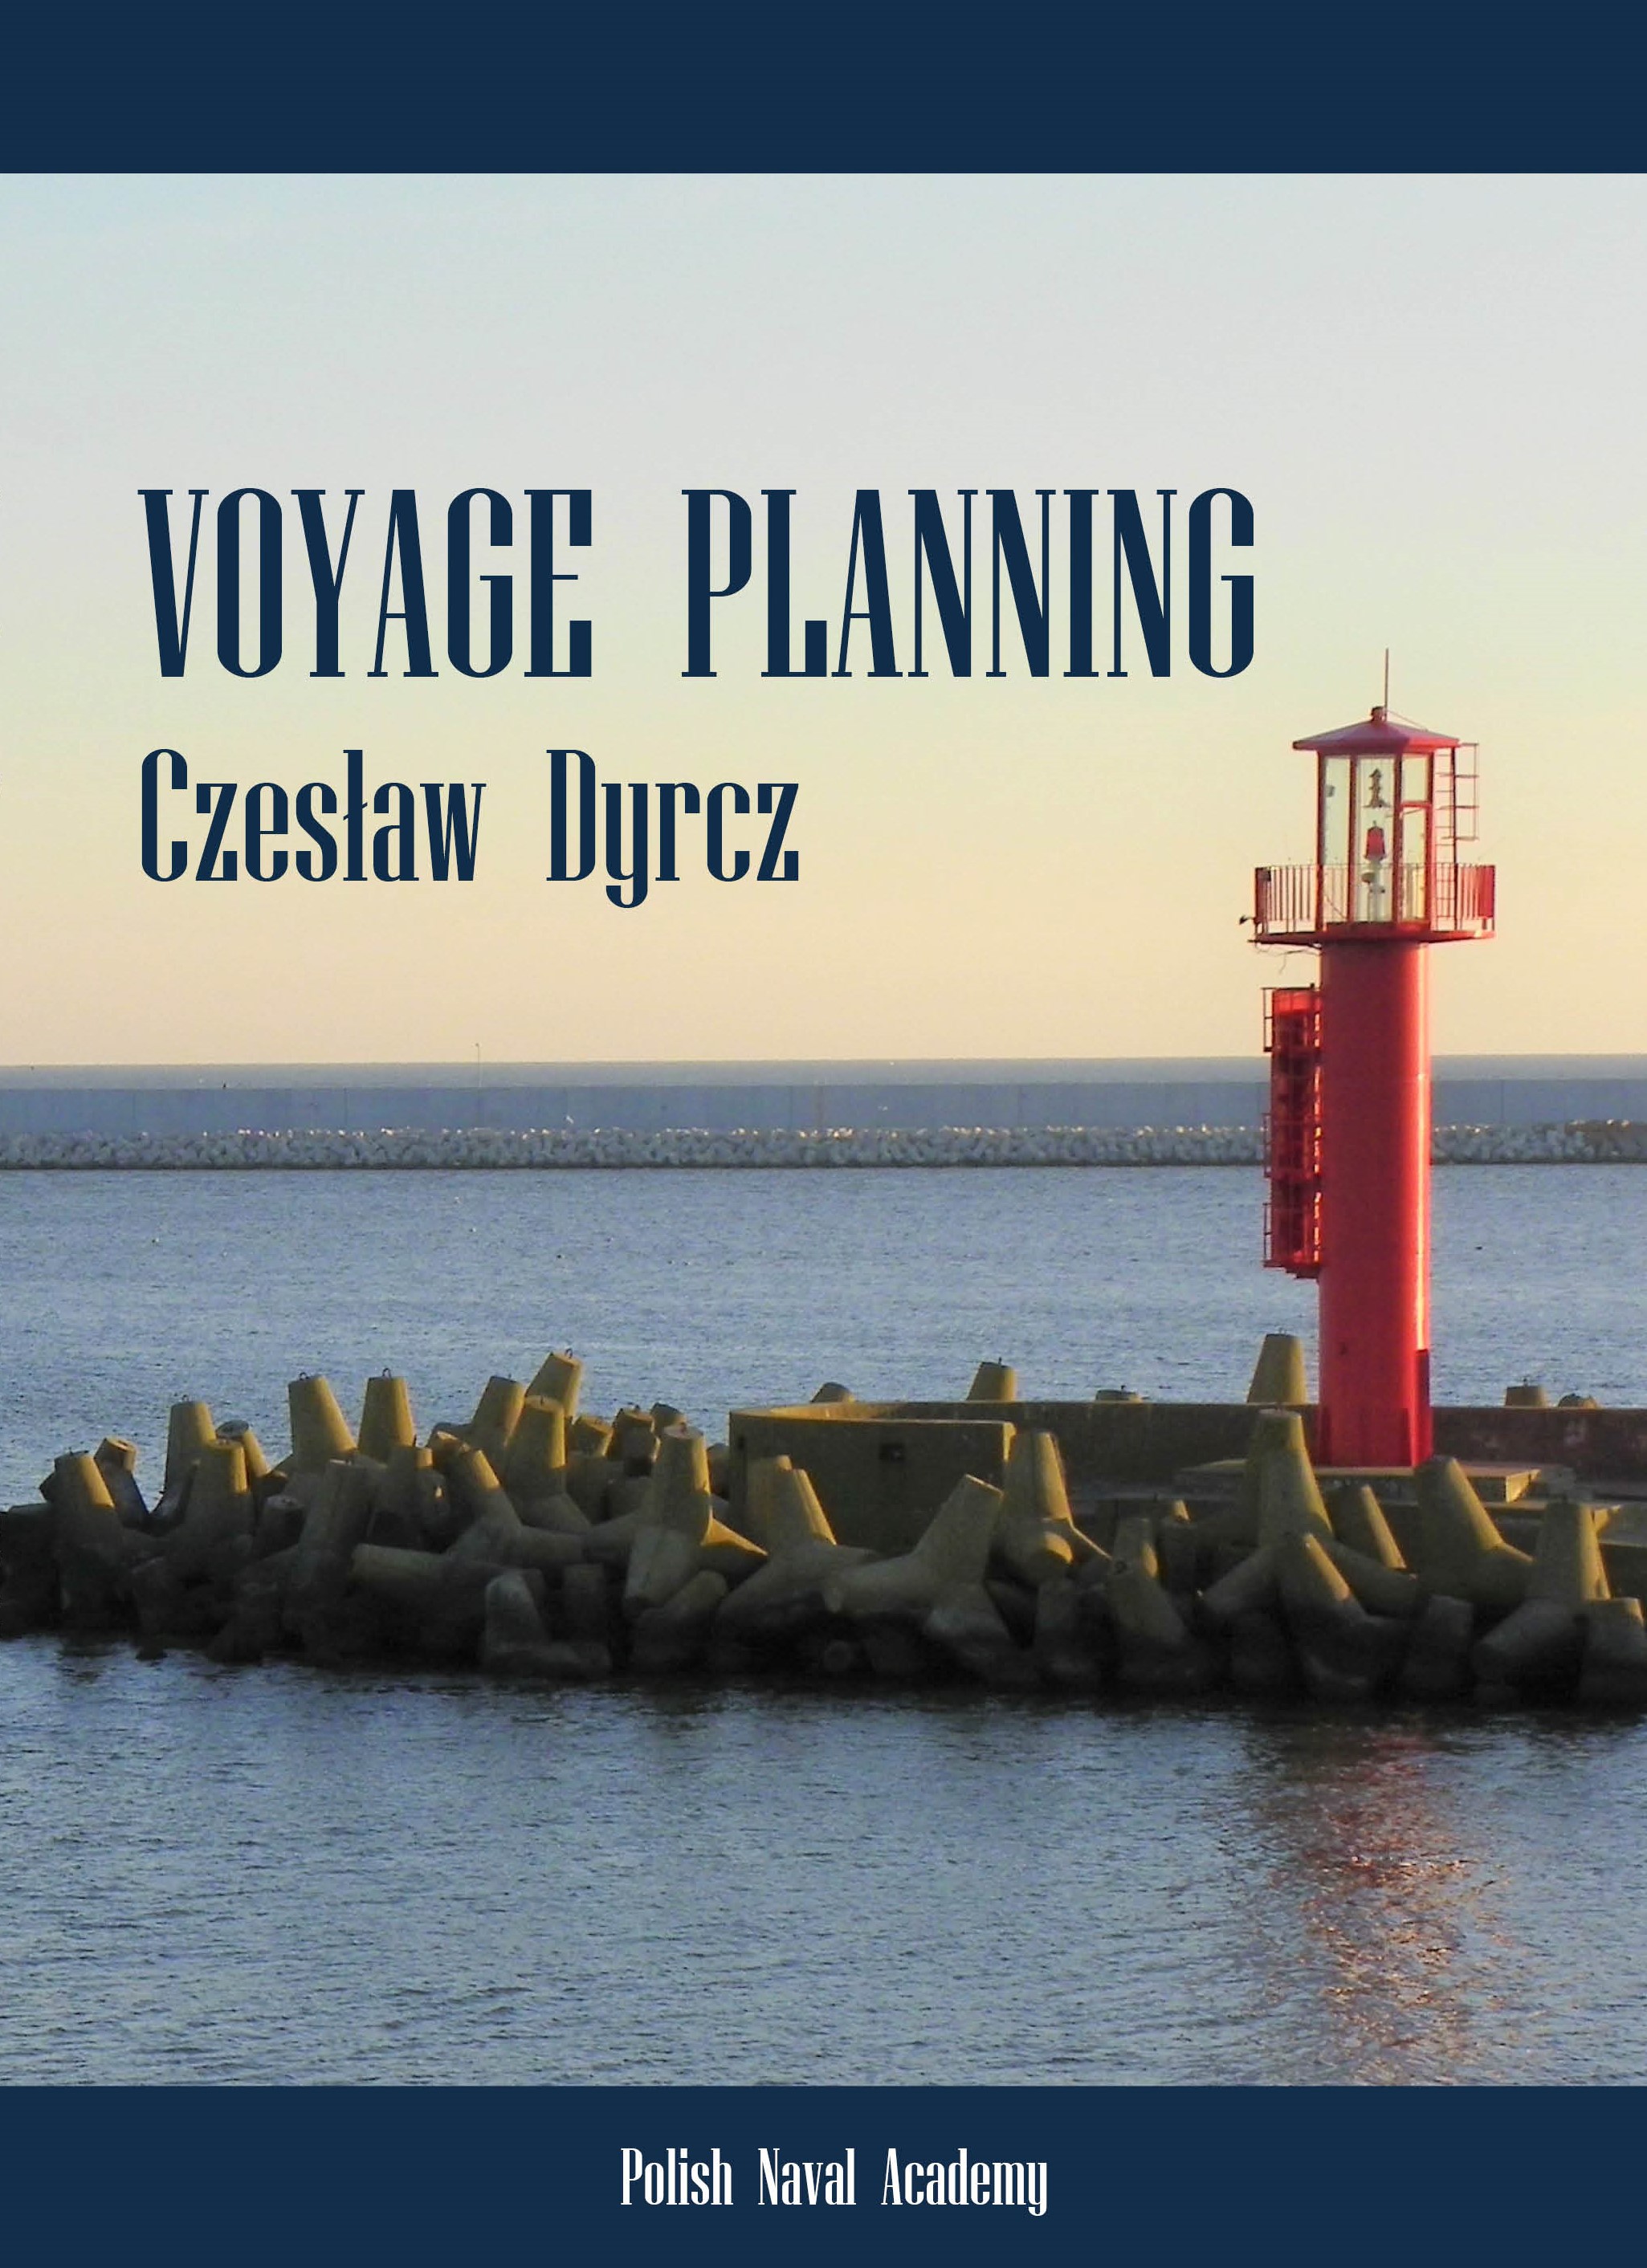 Voyage planning